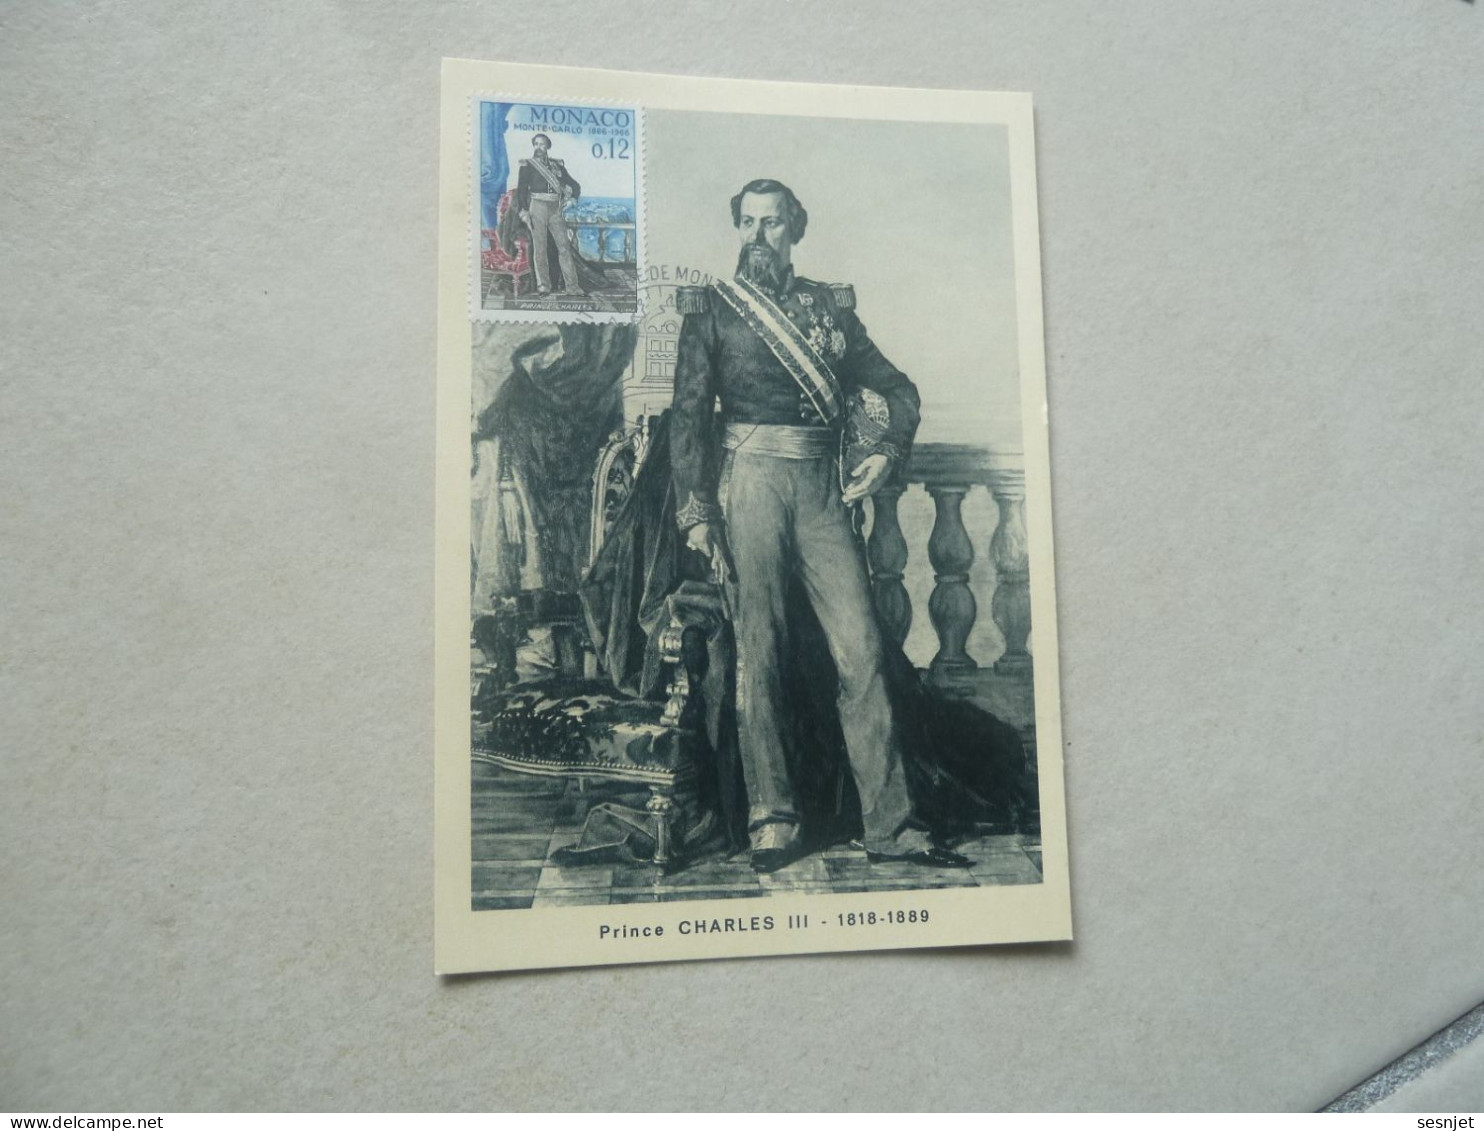 Monaco - Prince Charles III (1818-1889) - 12c. - Yt 690 - Carte Premier Jour D'Emission - Année 1966 - - Cartoline Maximum